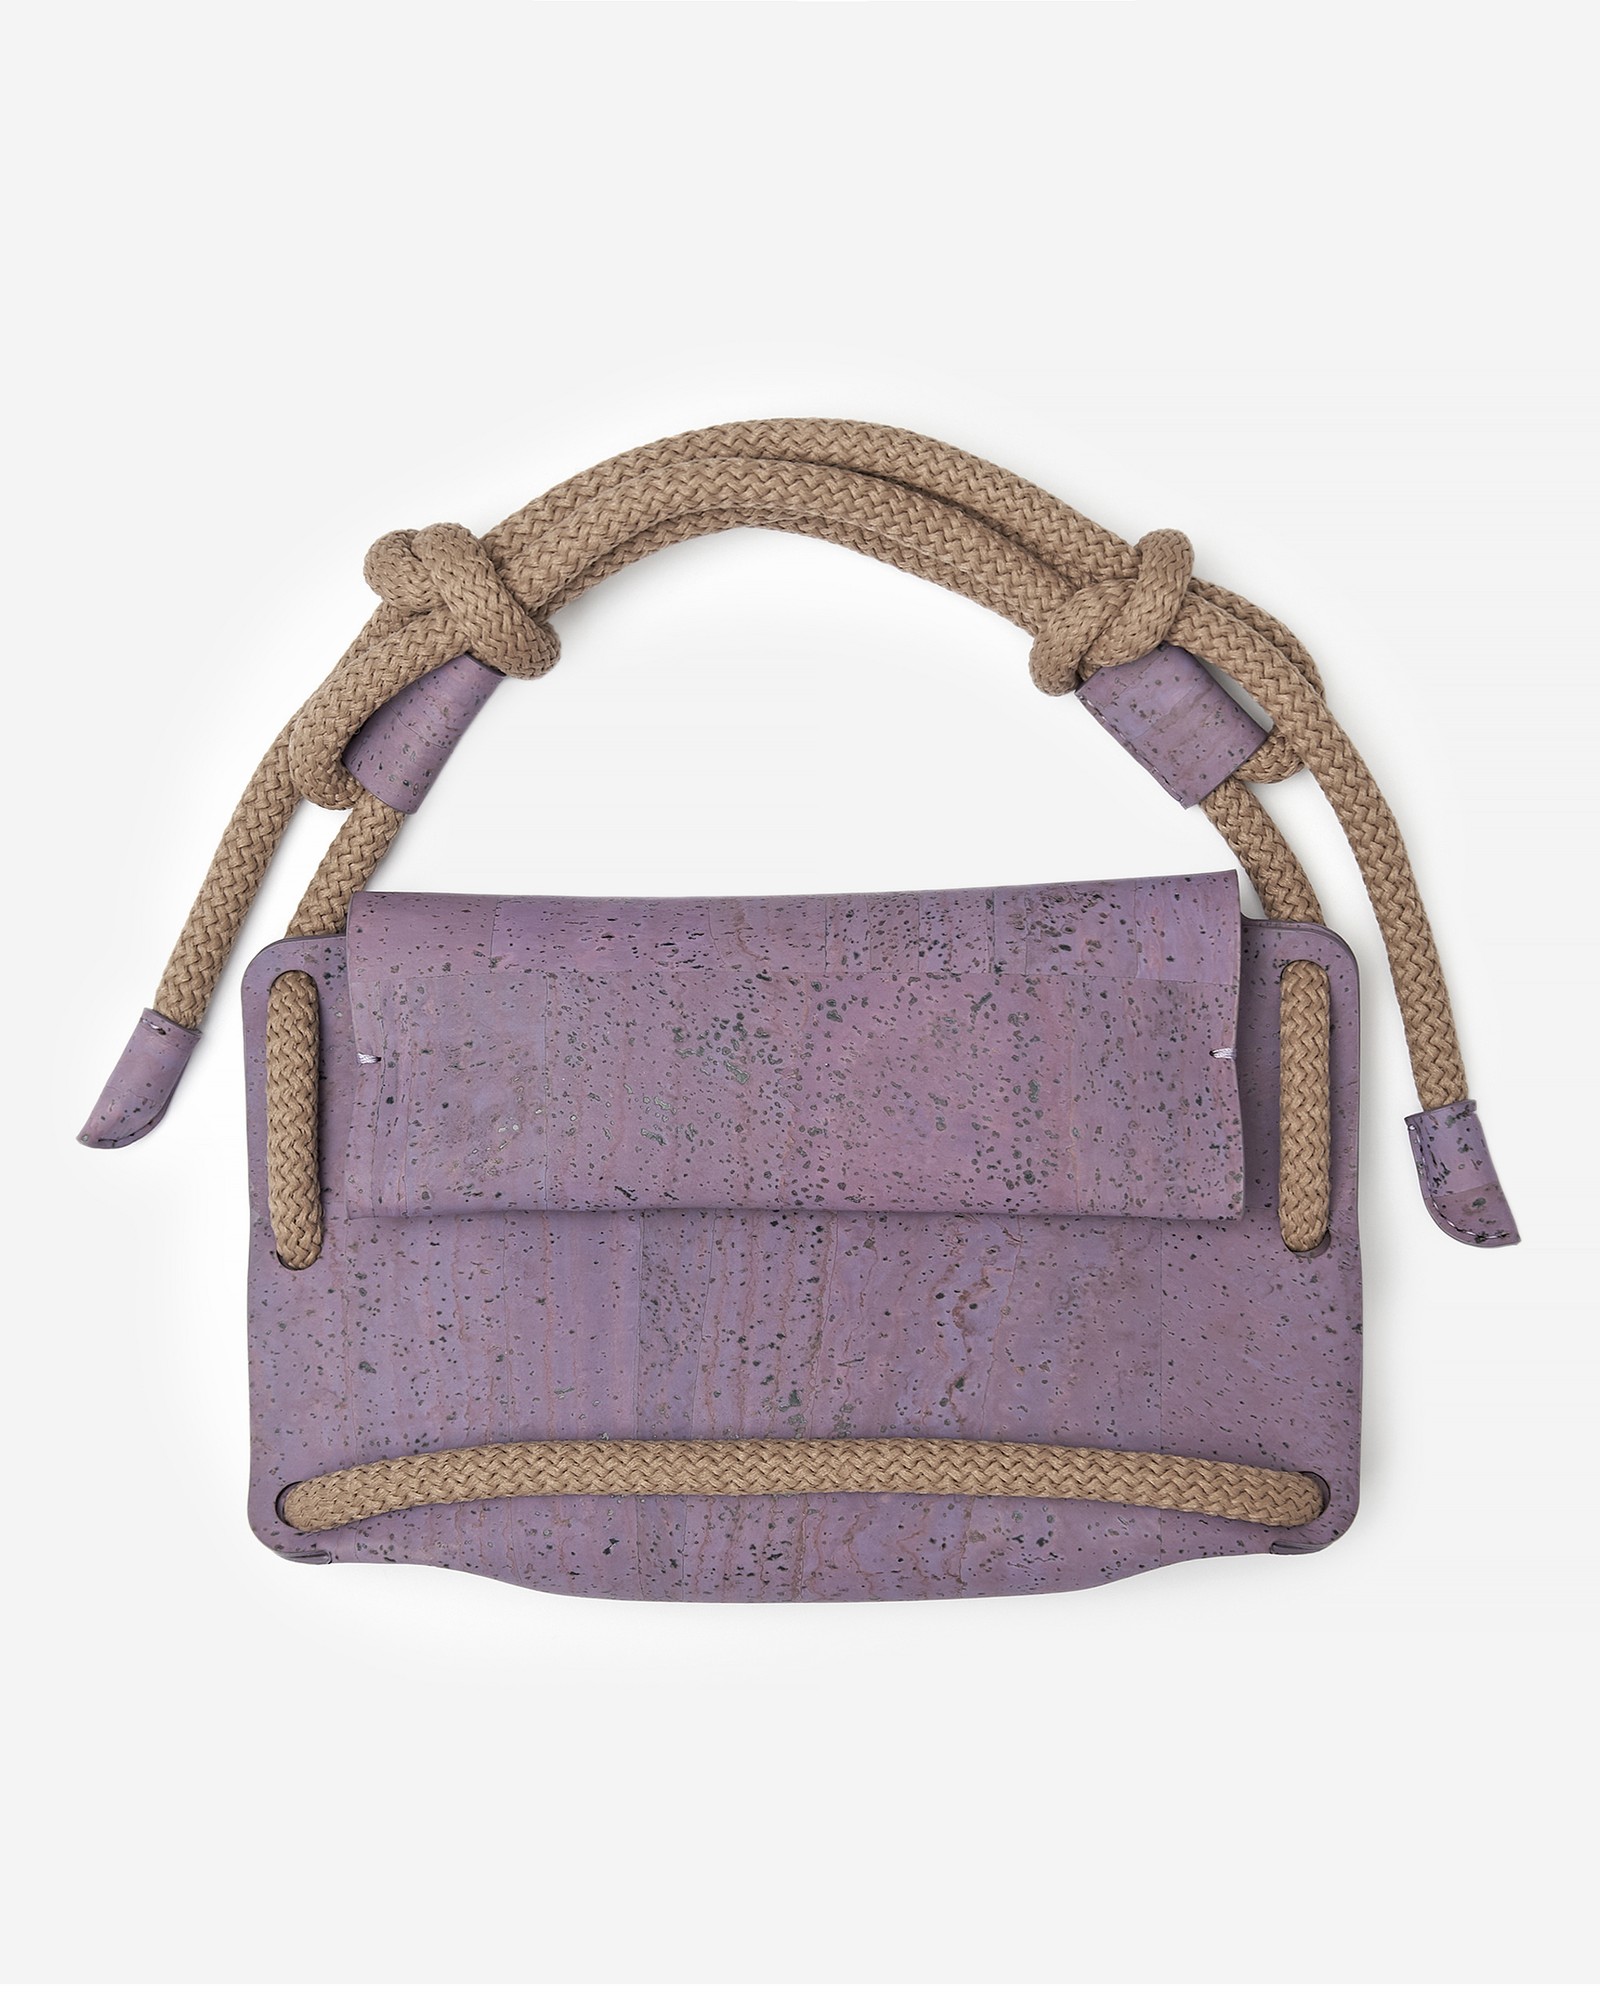 Natural cork crossbody bag Kumotori mini in purple color